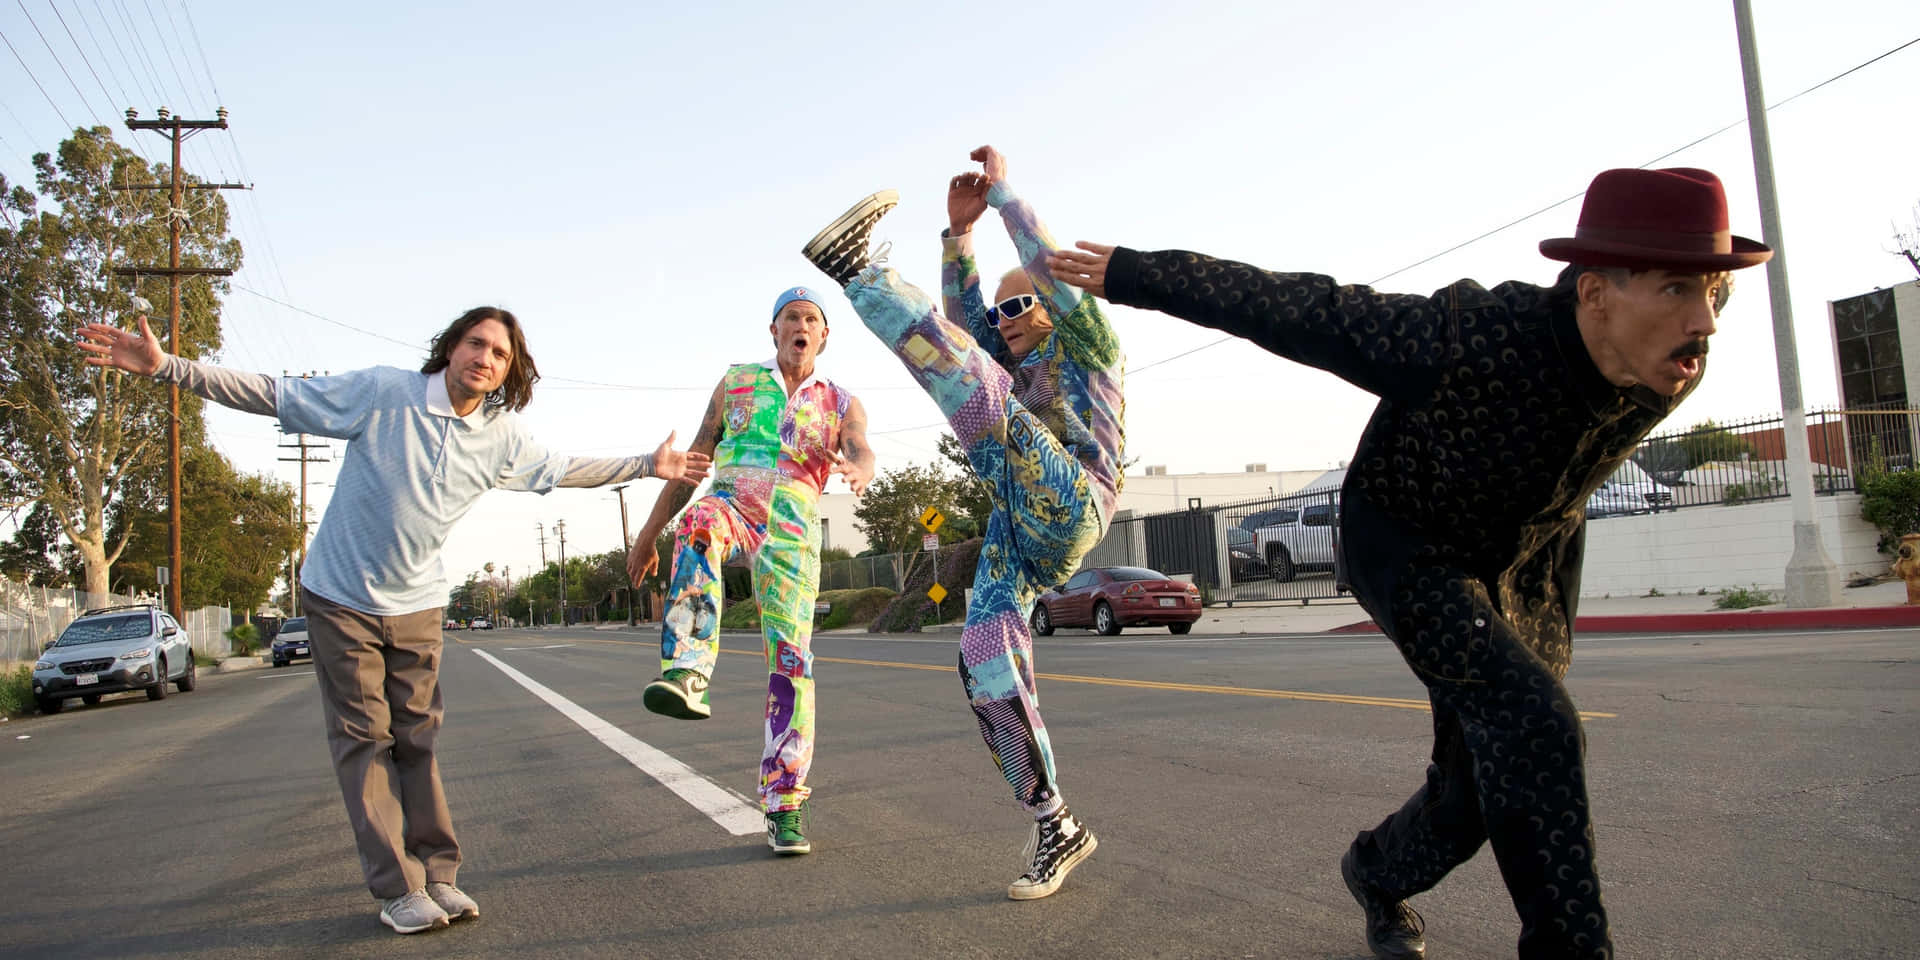 Redhot Chili Peppers In Tutine Colorate. Sfondo